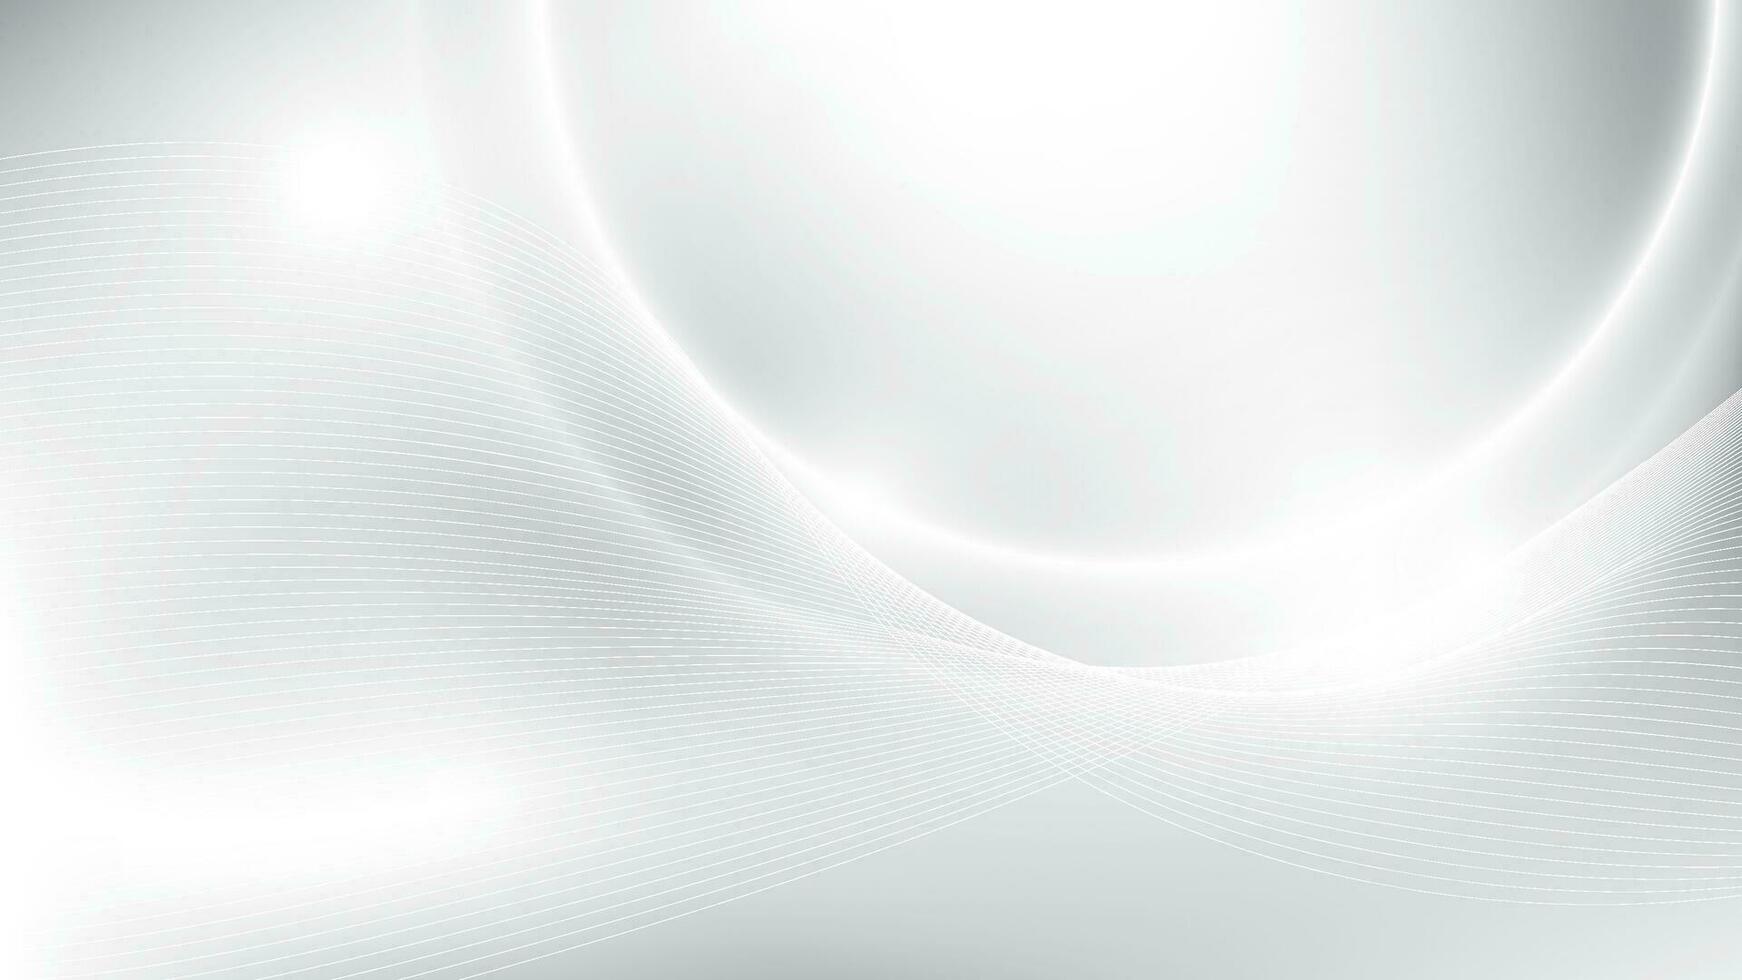 abstrakt vit och grå Färg bakgrund med geometrisk runda form, modern Ränder. vektor illustration.